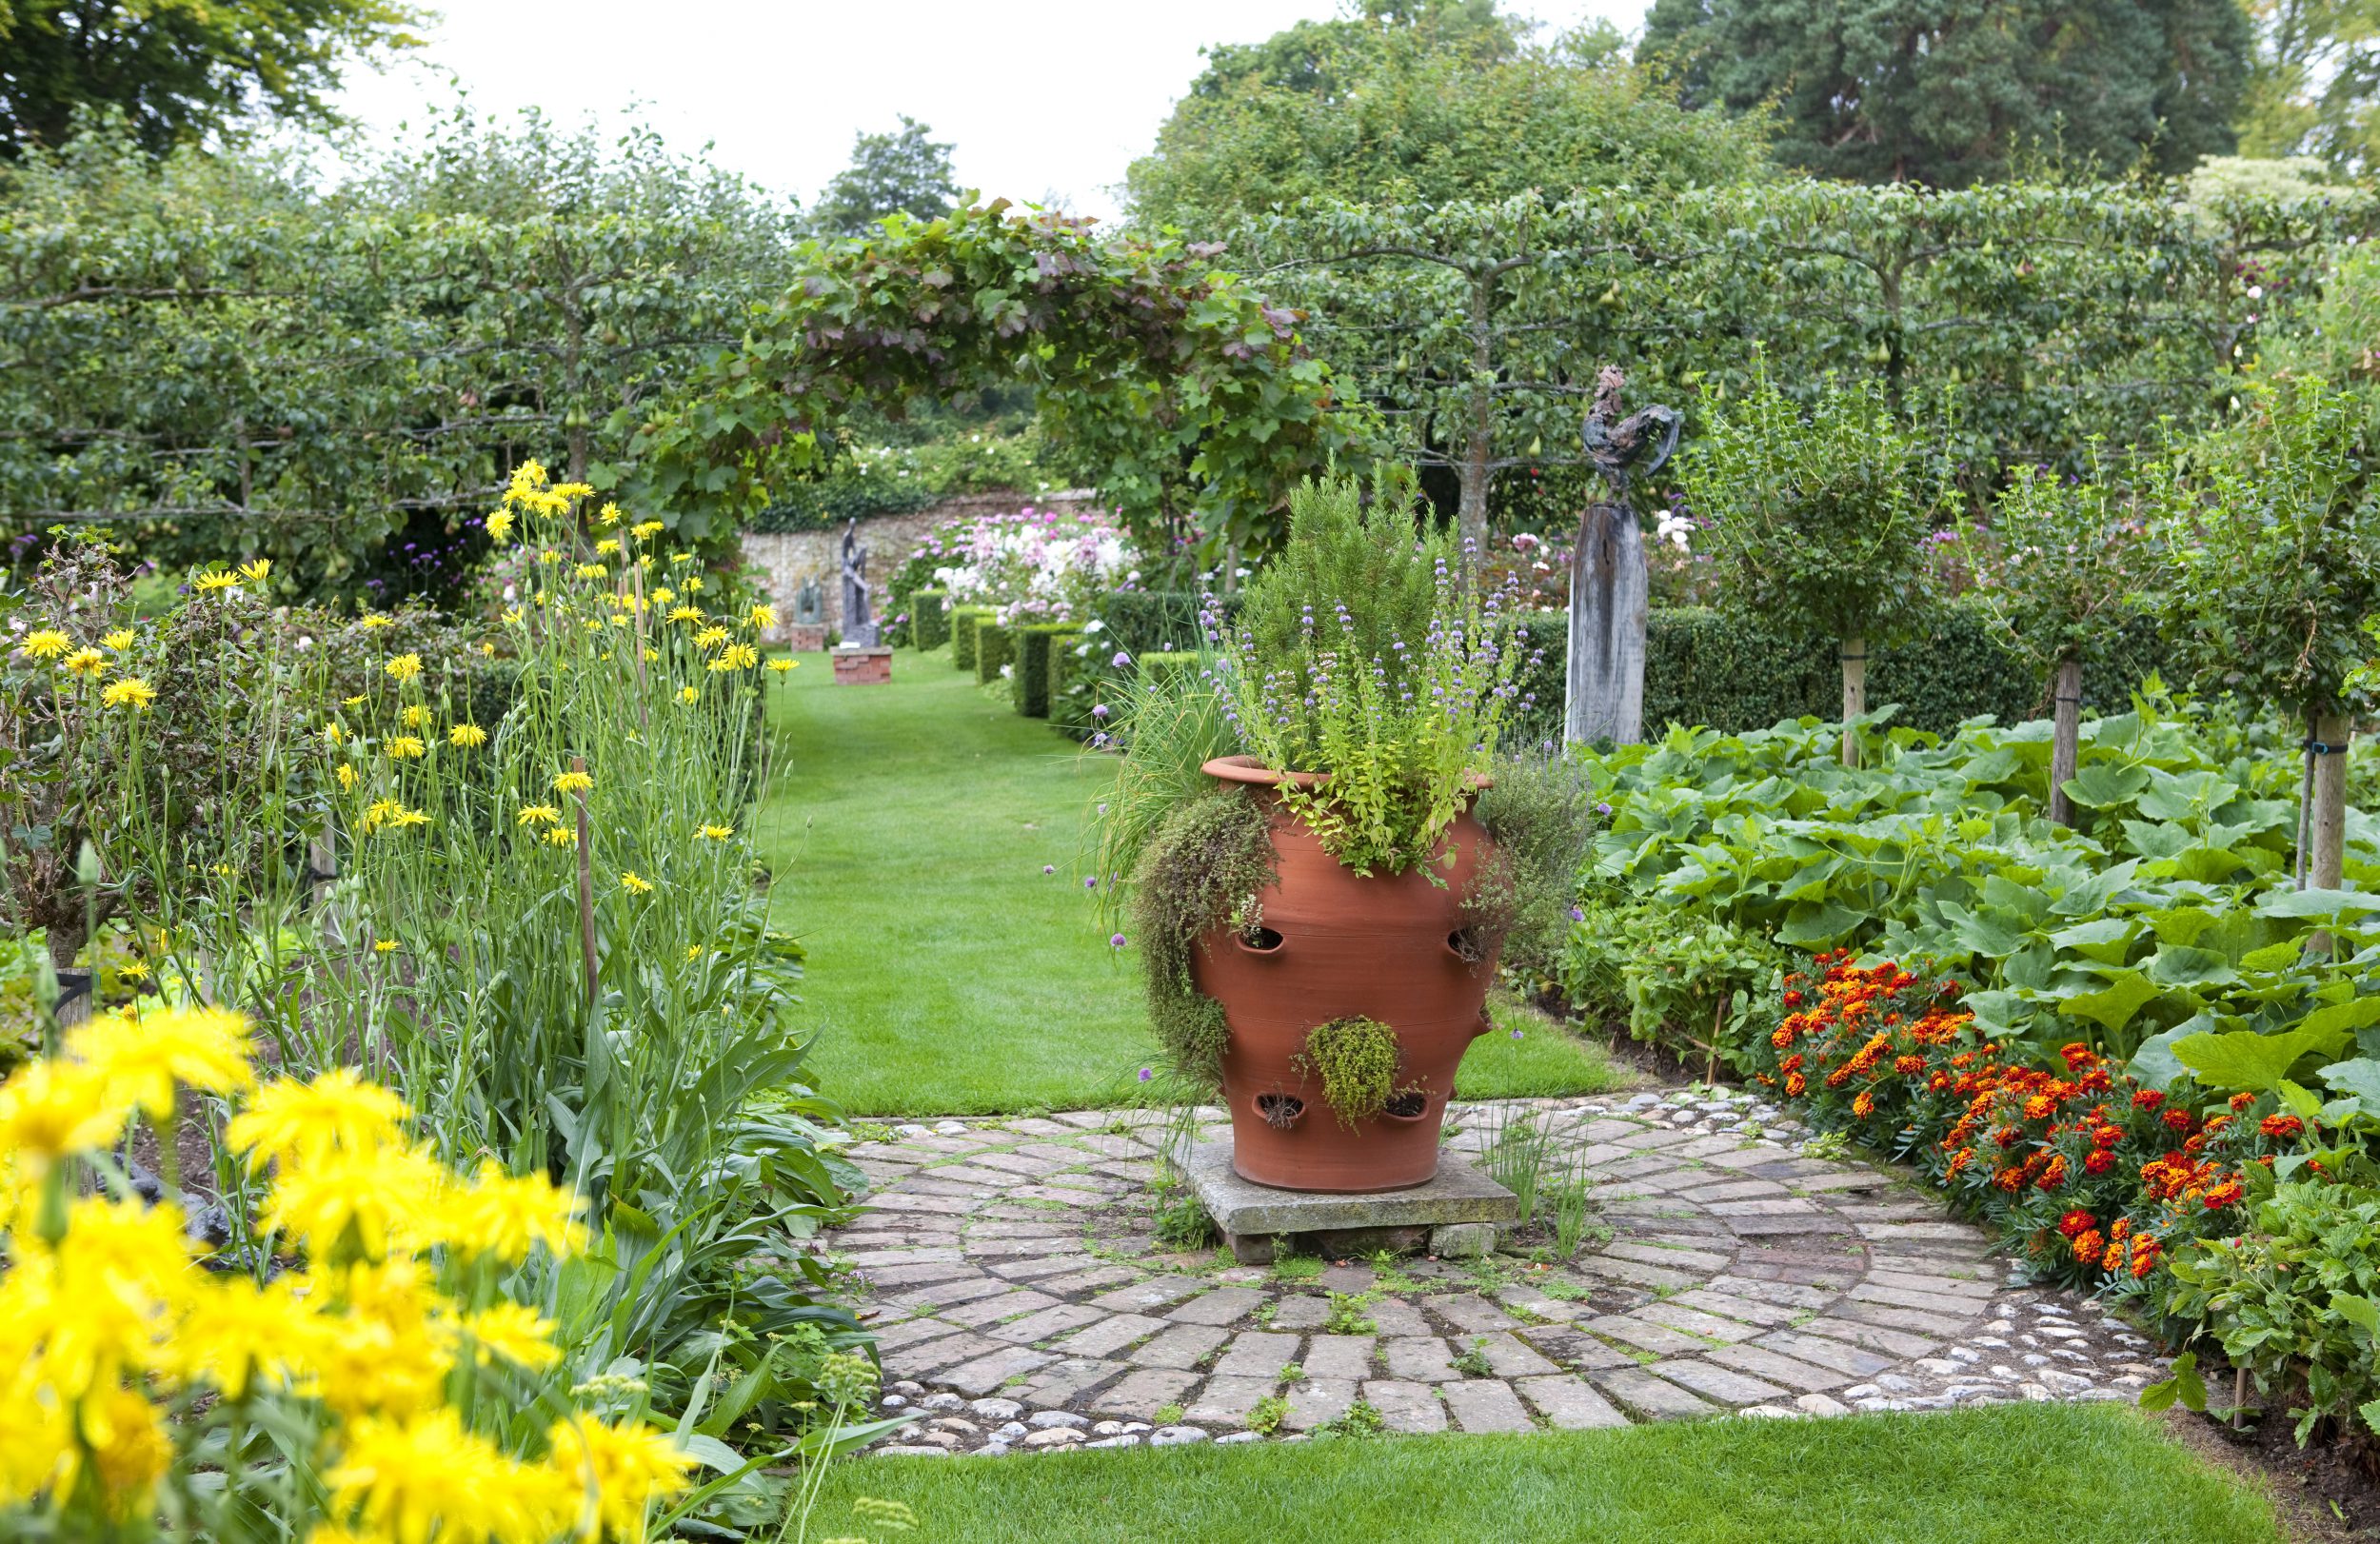 PASHLEY MANOR GARDENS Kitchen Garden by Leigh Clapp